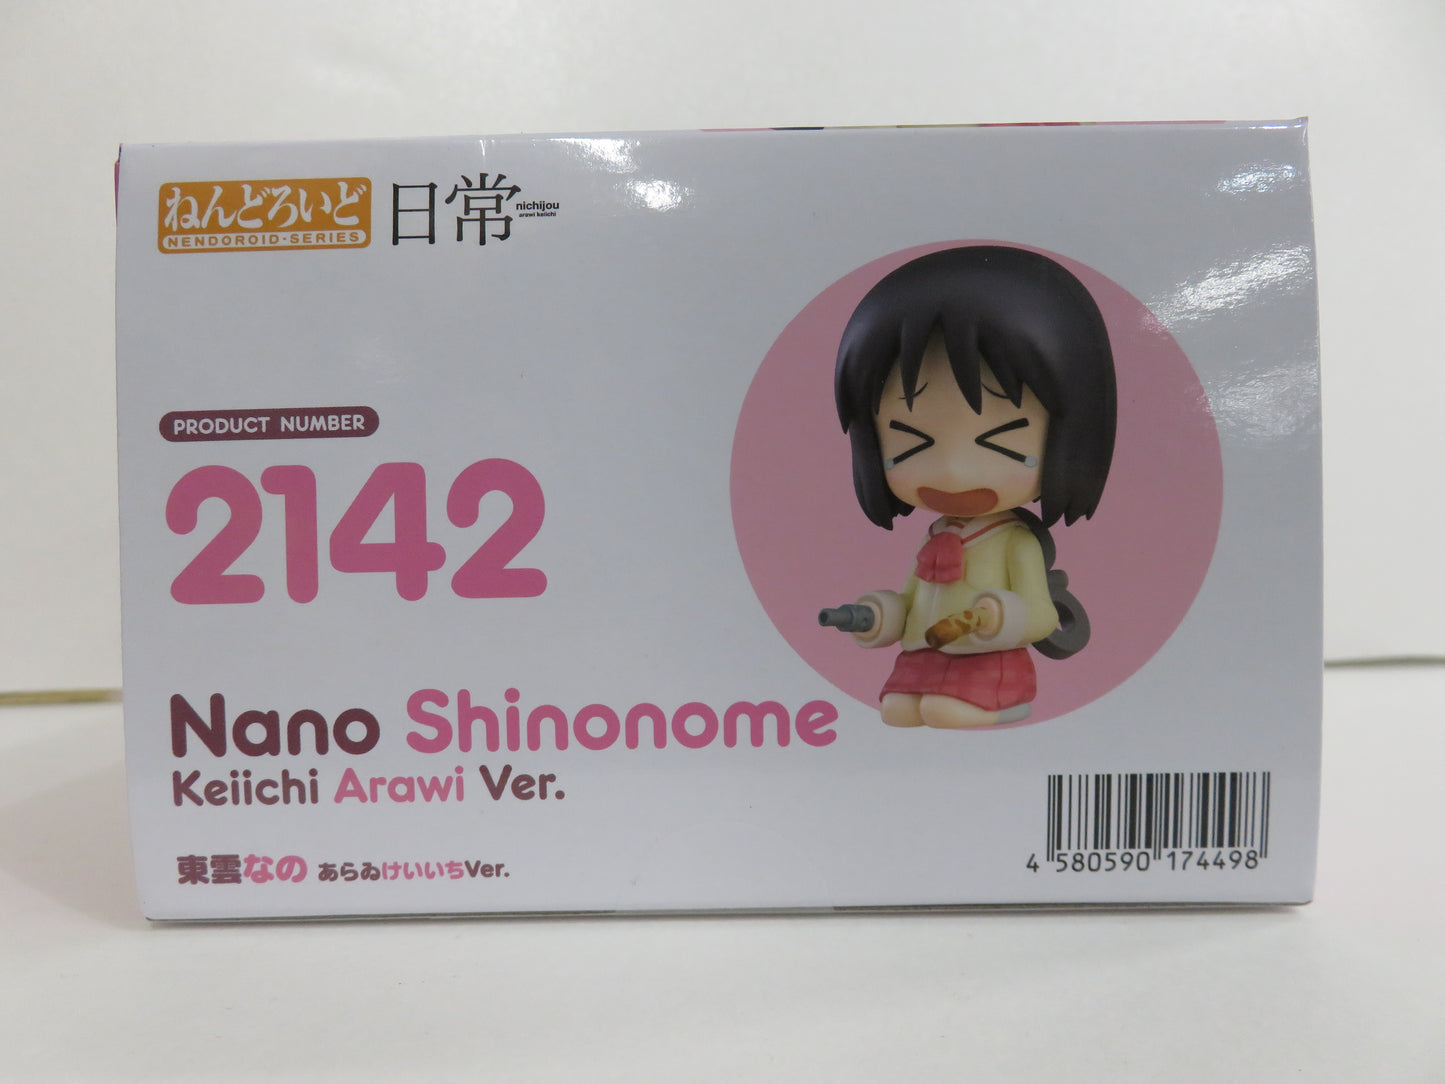 Nendoroid No.2142 Shinonome Nano Araikeiichi Ver. (Daily)